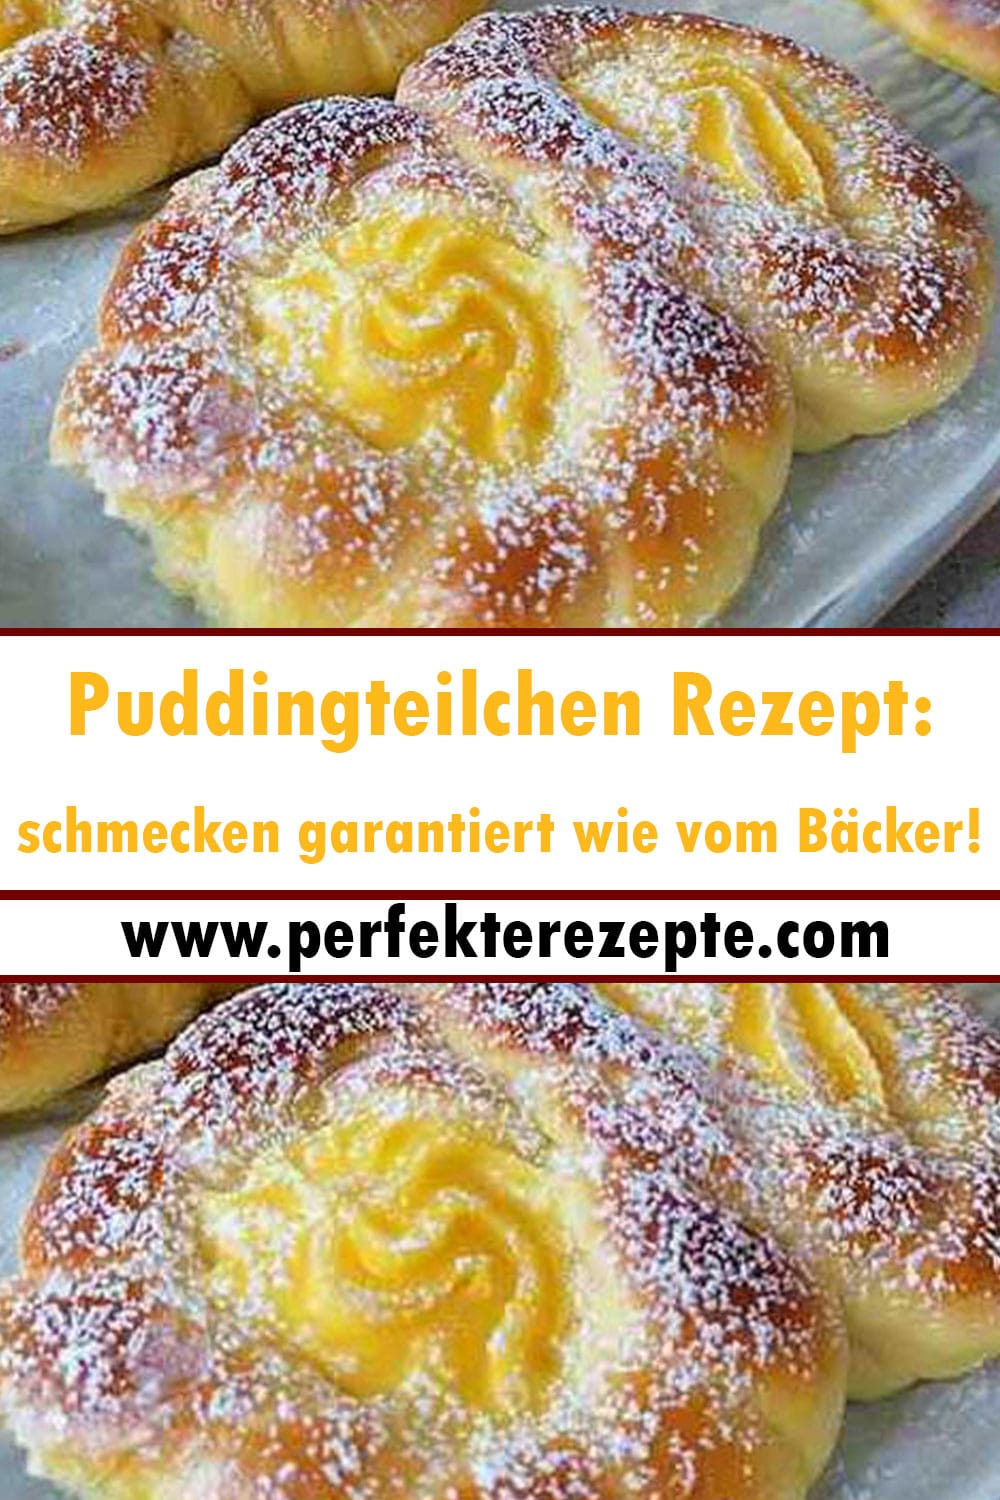 Puddingteilchen Rezept: schmecken garantiert wie vom Bäcker!